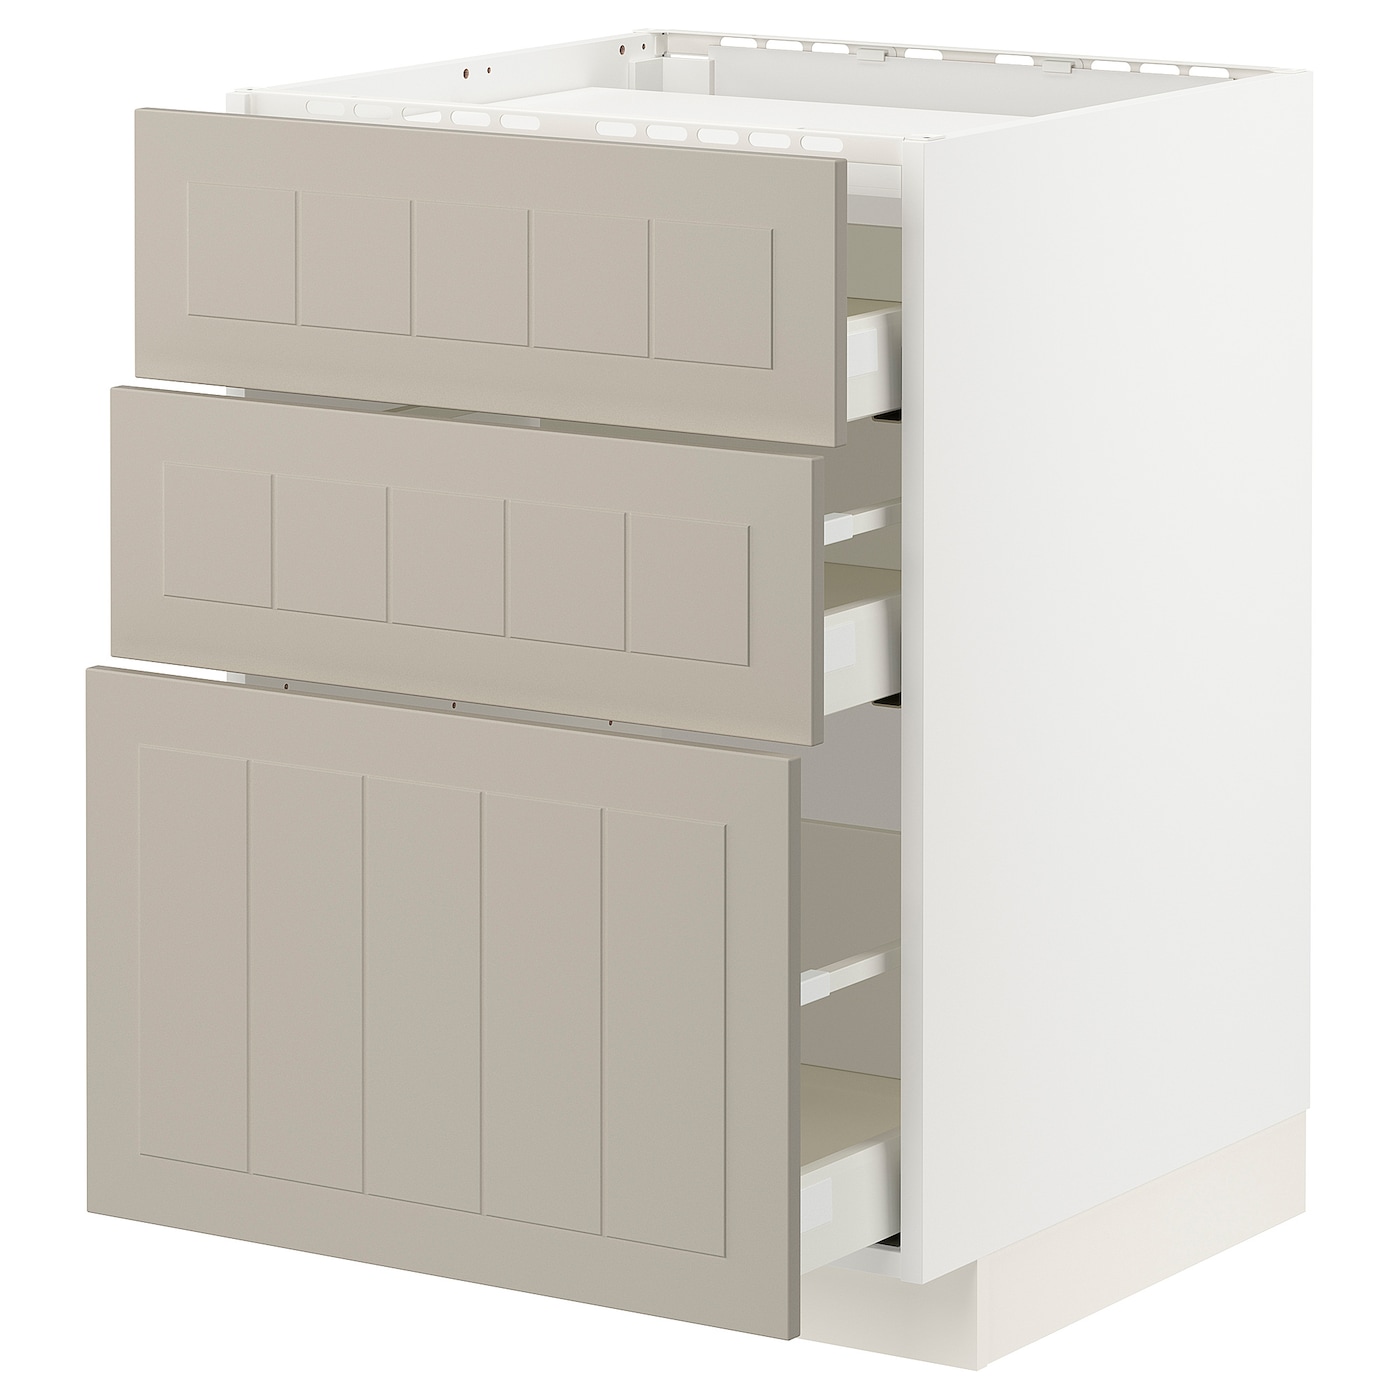 Напольный шкаф - IKEA METOD MAXIMERA, 88x62x60см, белый/темно-бежевый, МЕТОД МАКСИМЕРА ИКЕА